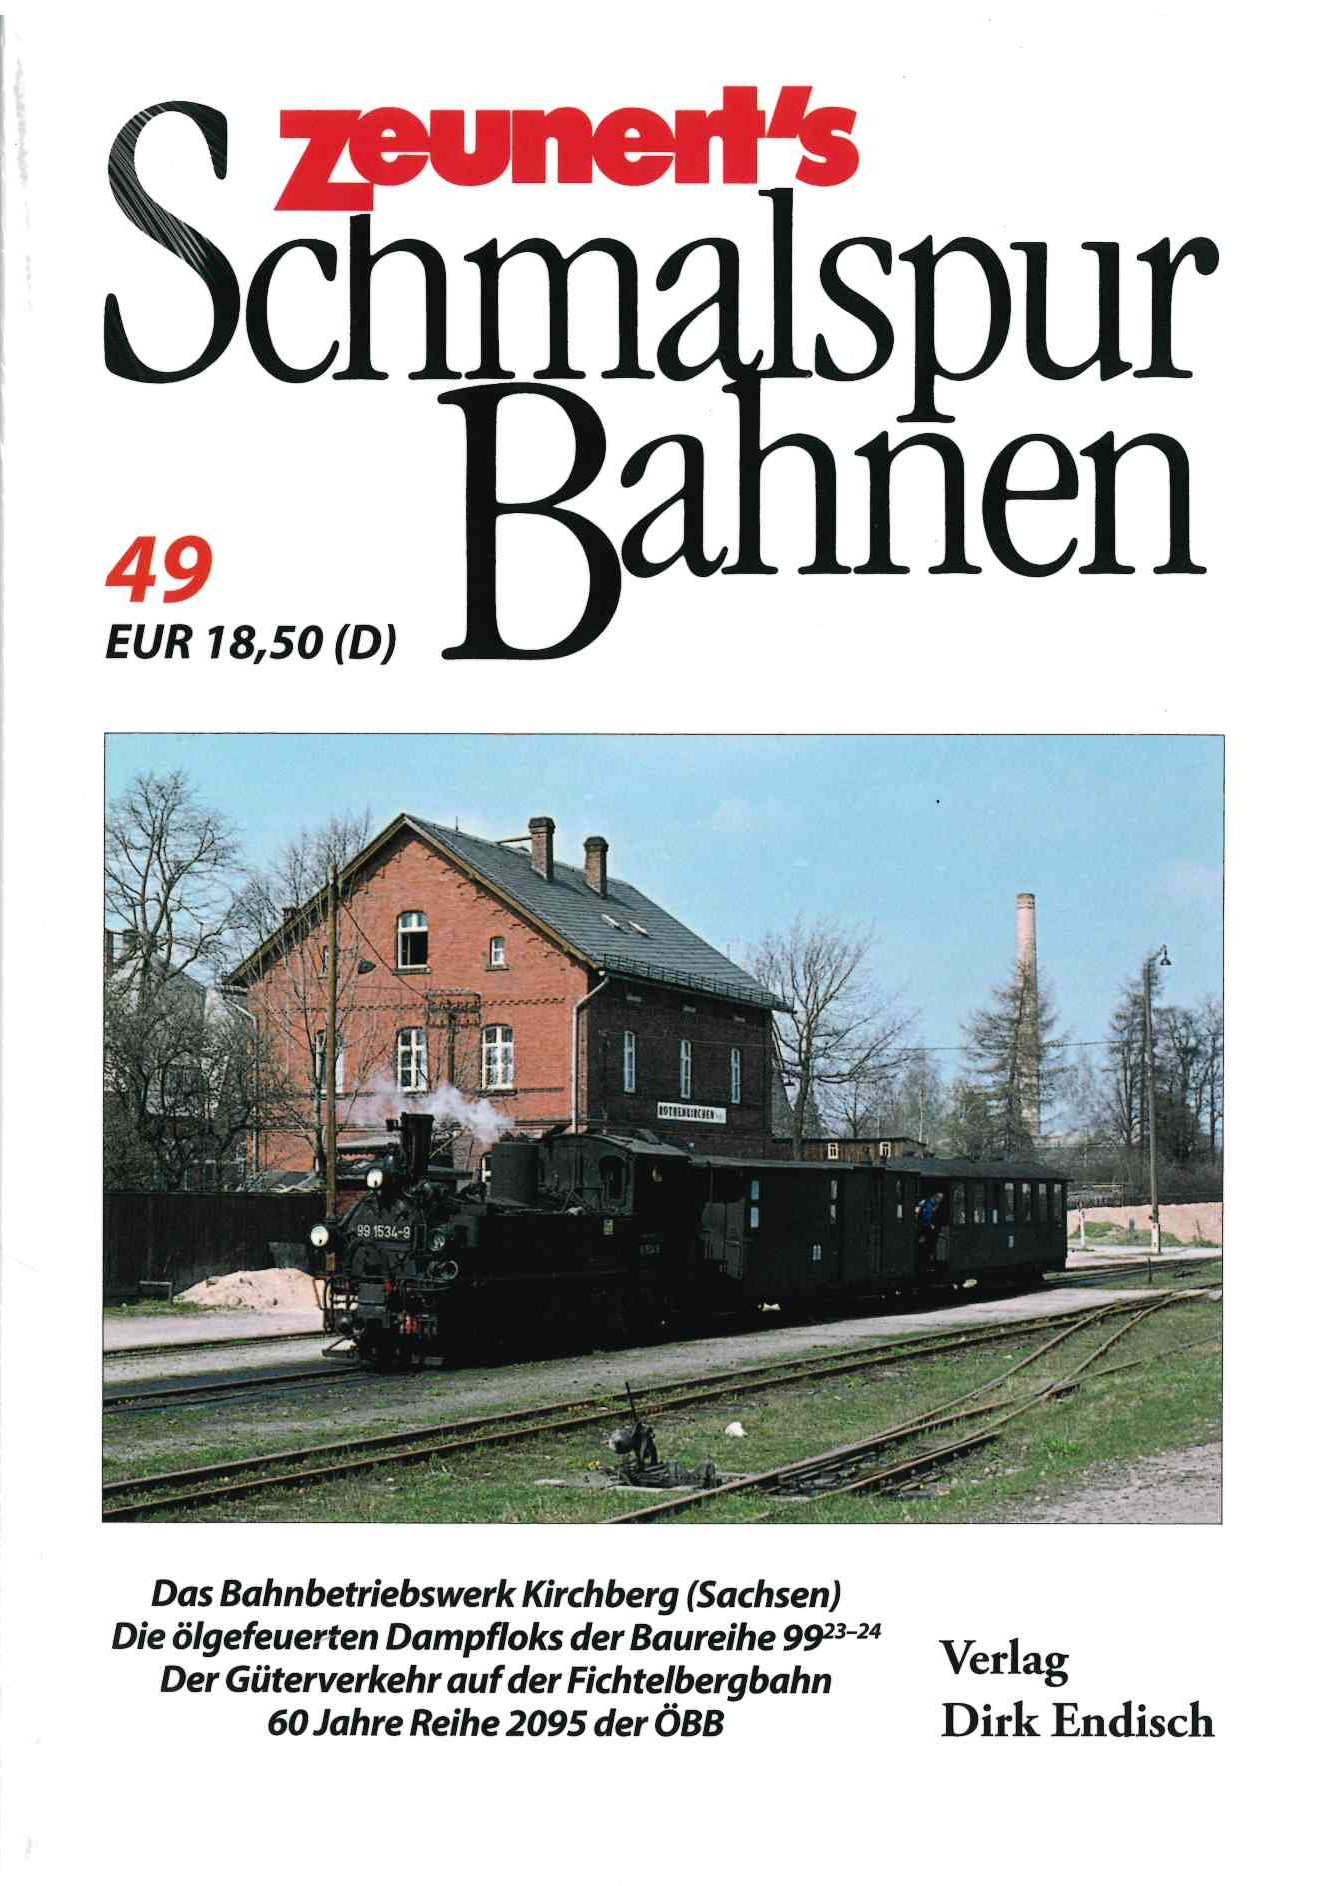 Z Zeunerts Schmalspurbahnen49 170 x 240 mm, fadengeheftete Broschur